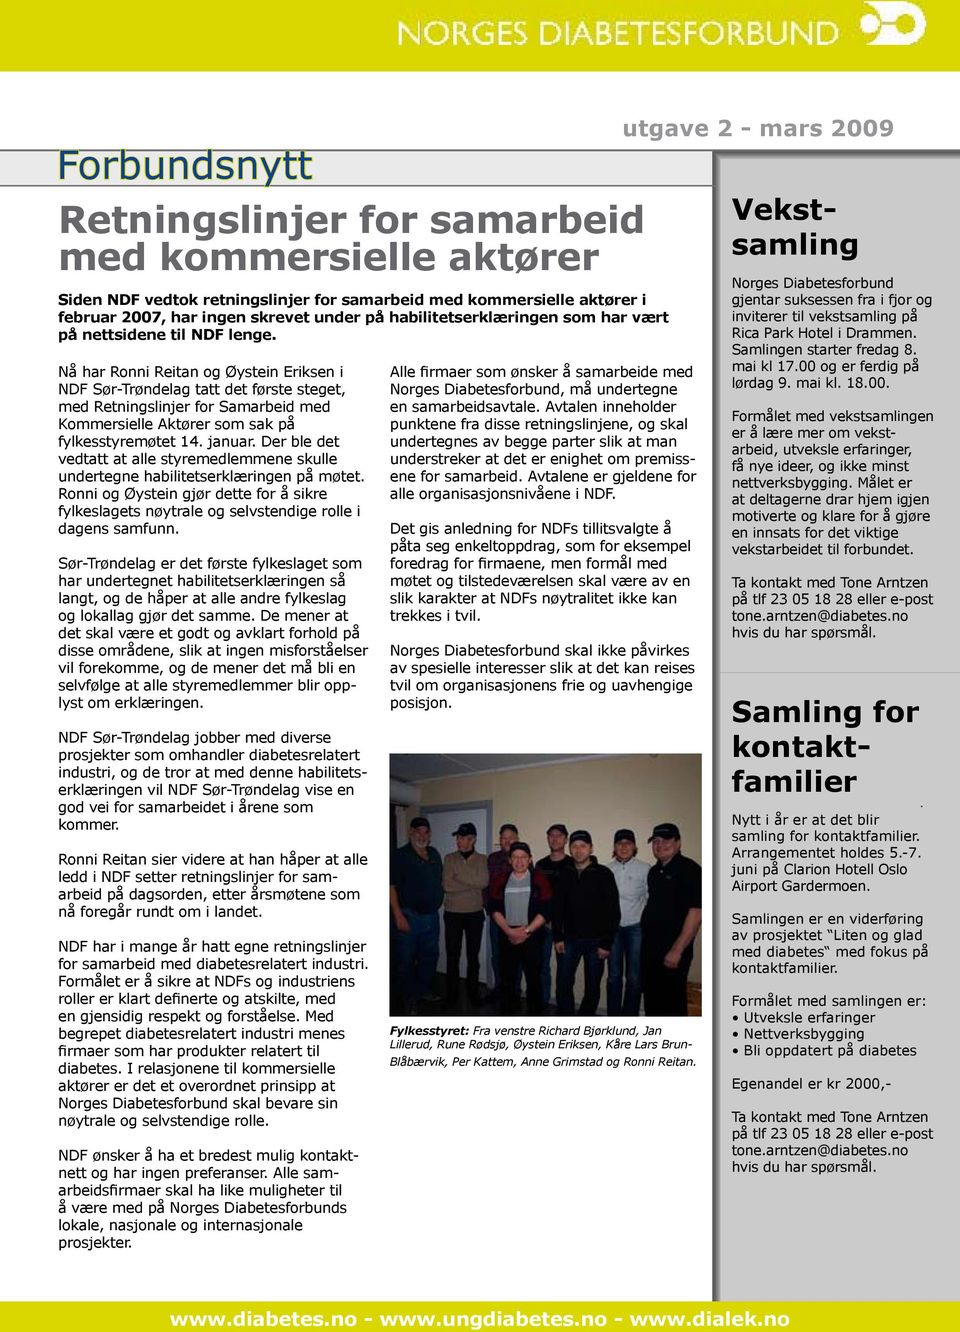 Nå har Ronni Reitan og Øystein Eriksen i NDF Sør-Trøndelag tatt det første steget, med Retningslinjer for Samarbeid med Kommersielle Aktører som sak på fylkesstyremøtet 14. januar.